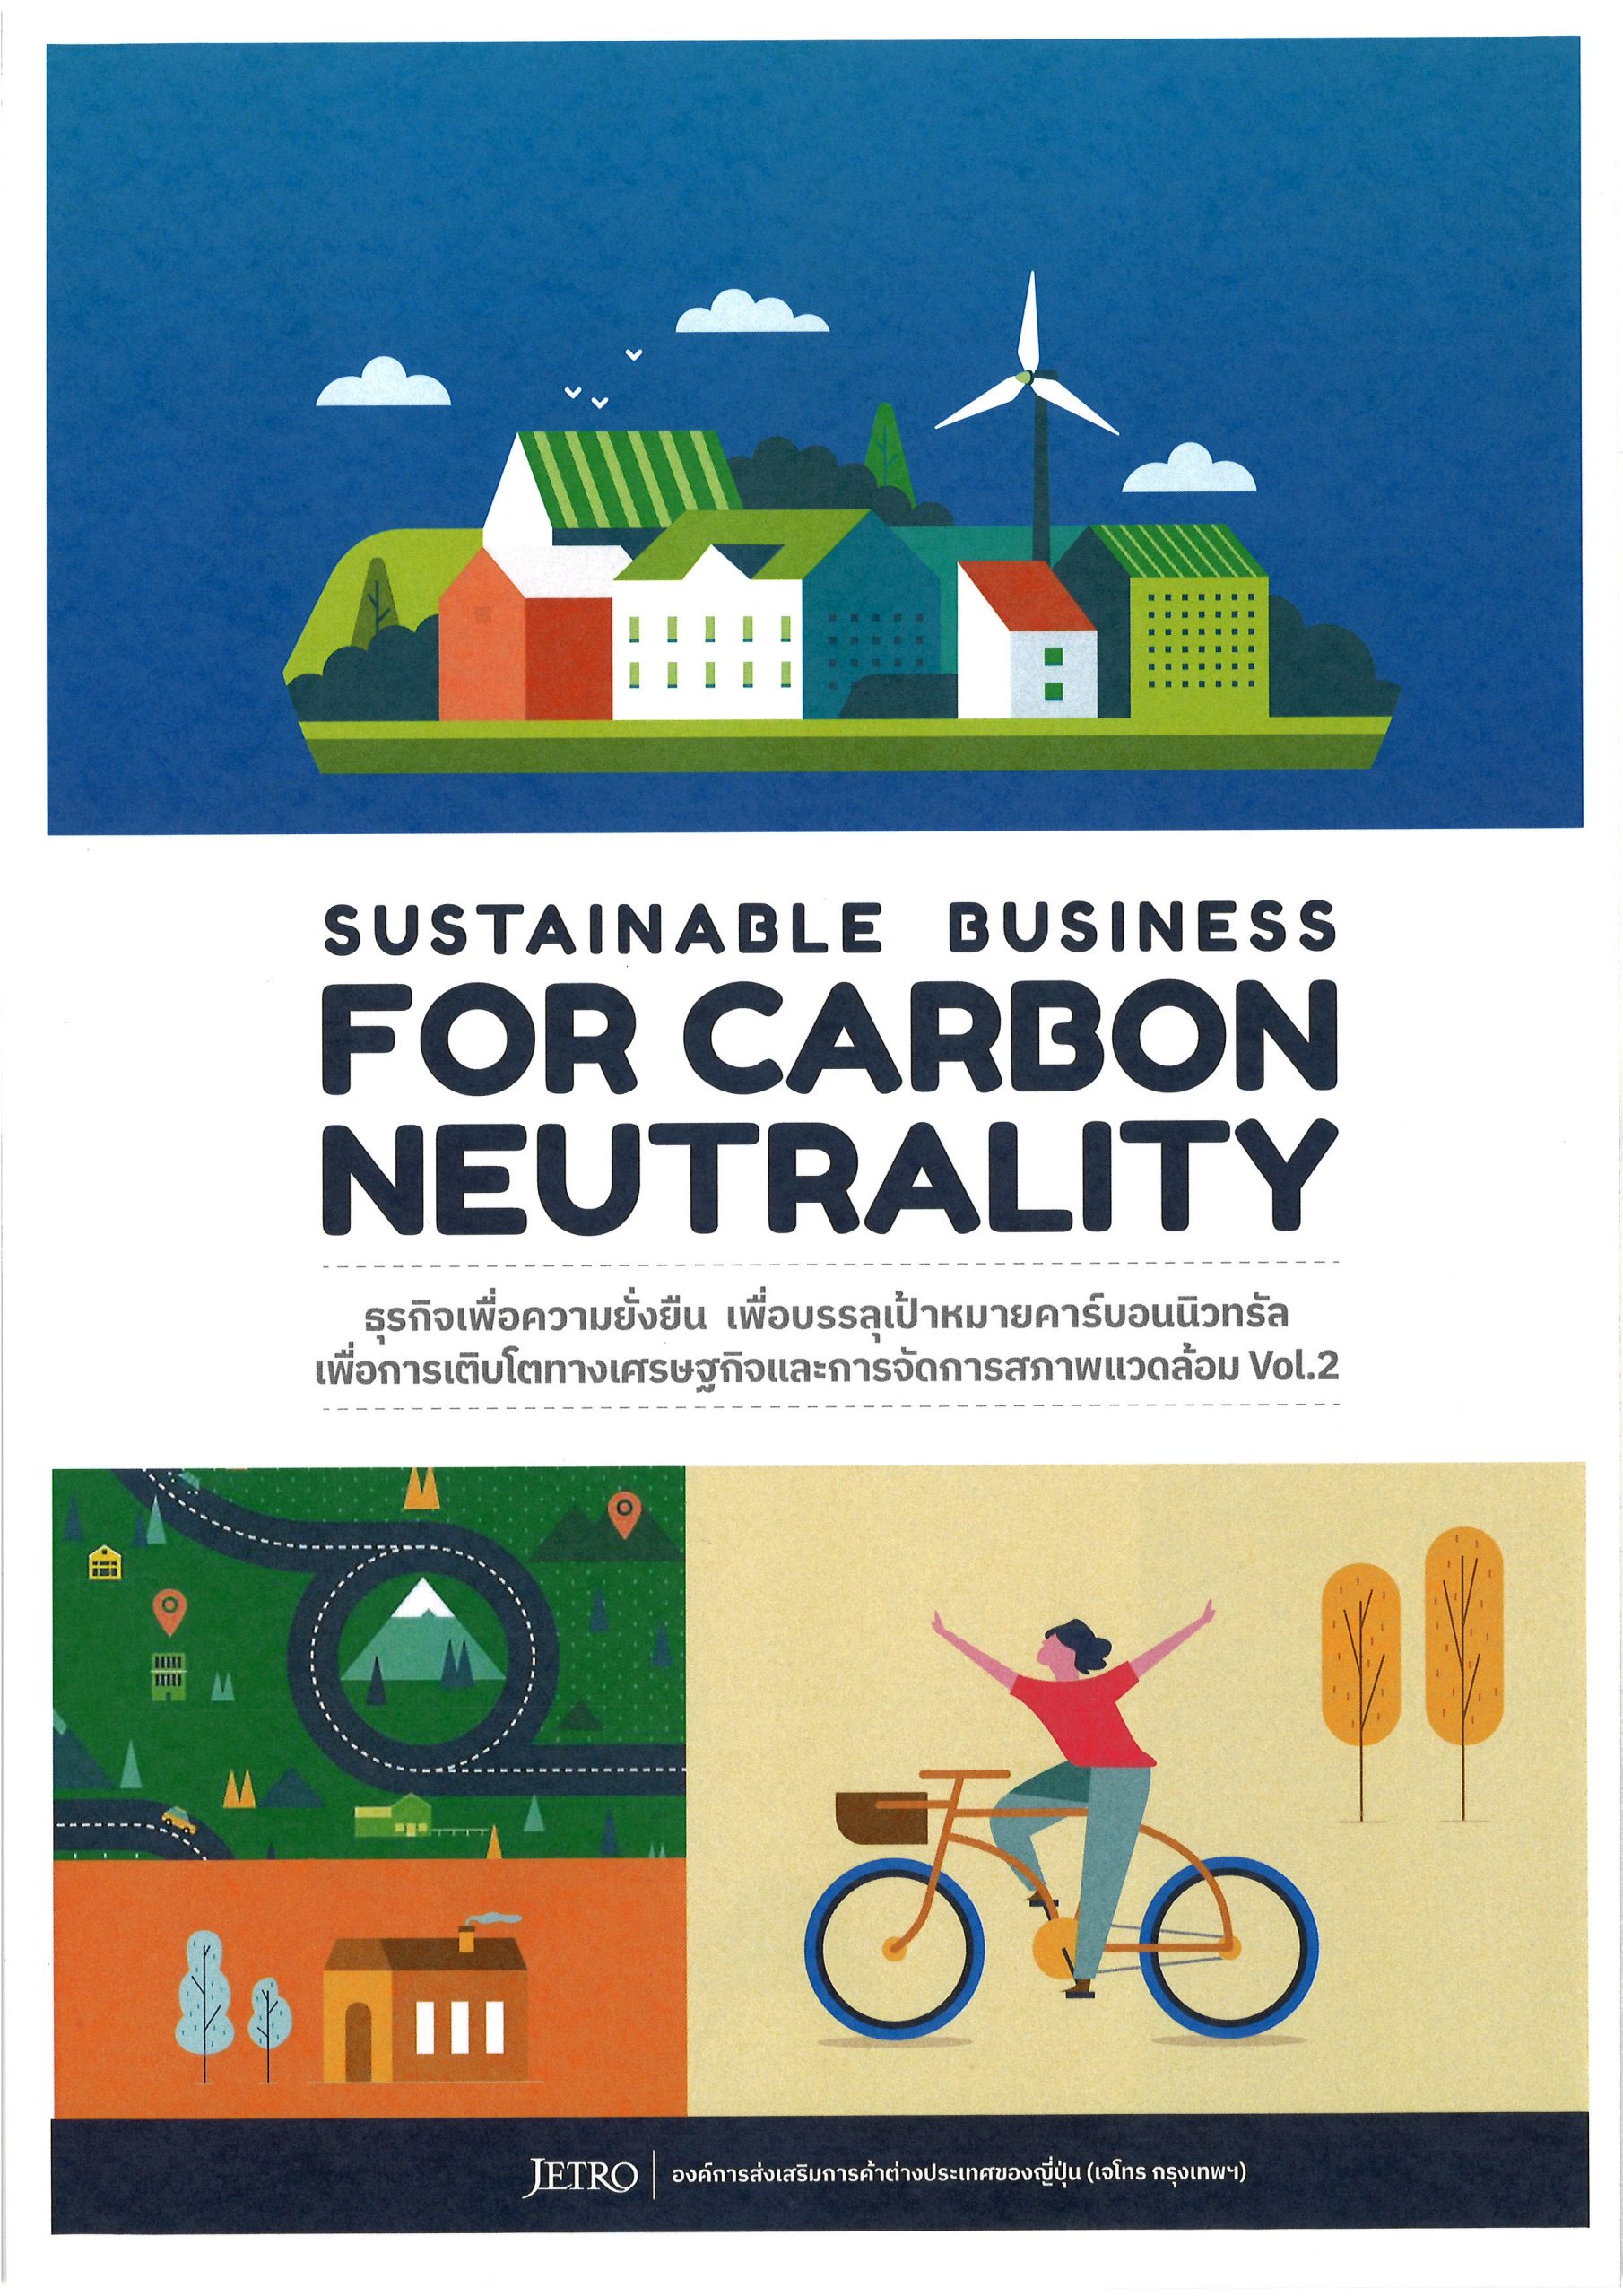 ジェトロ・バンコクが「持続可能な企業名簿 | RYT9」を発行